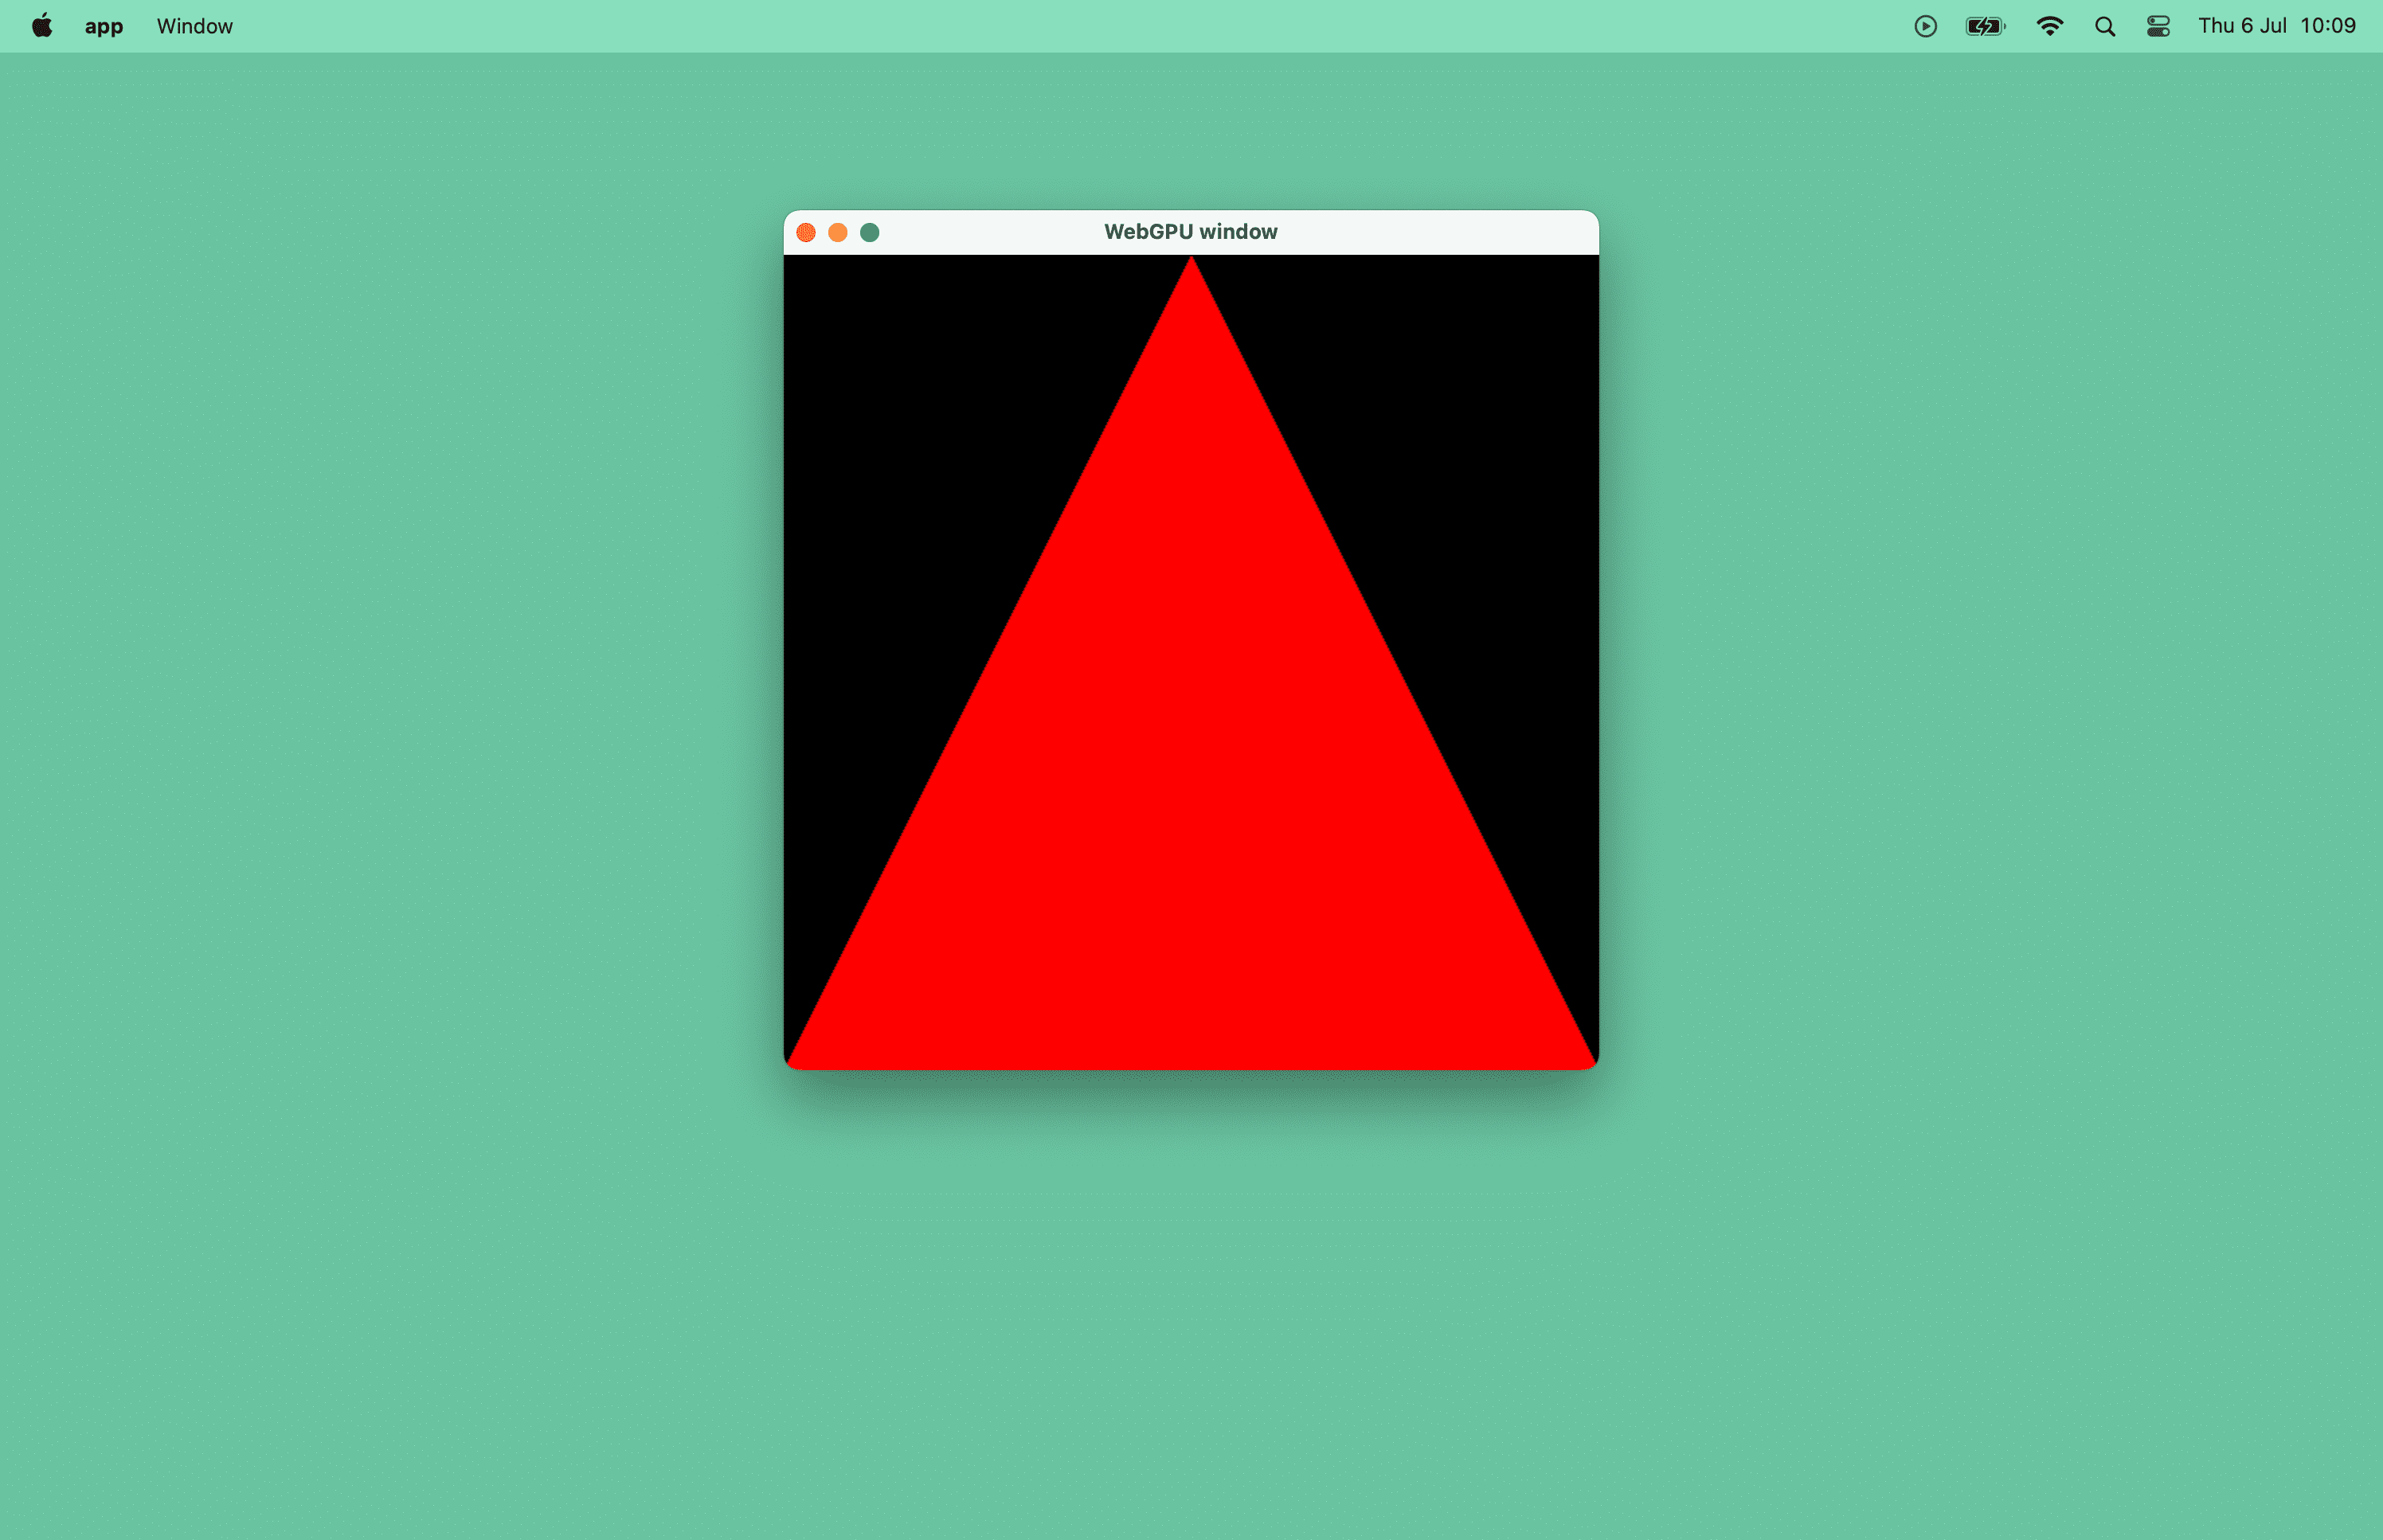 Ảnh chụp màn hình một hình tam giác màu đỏ trong cửa sổ macOS.